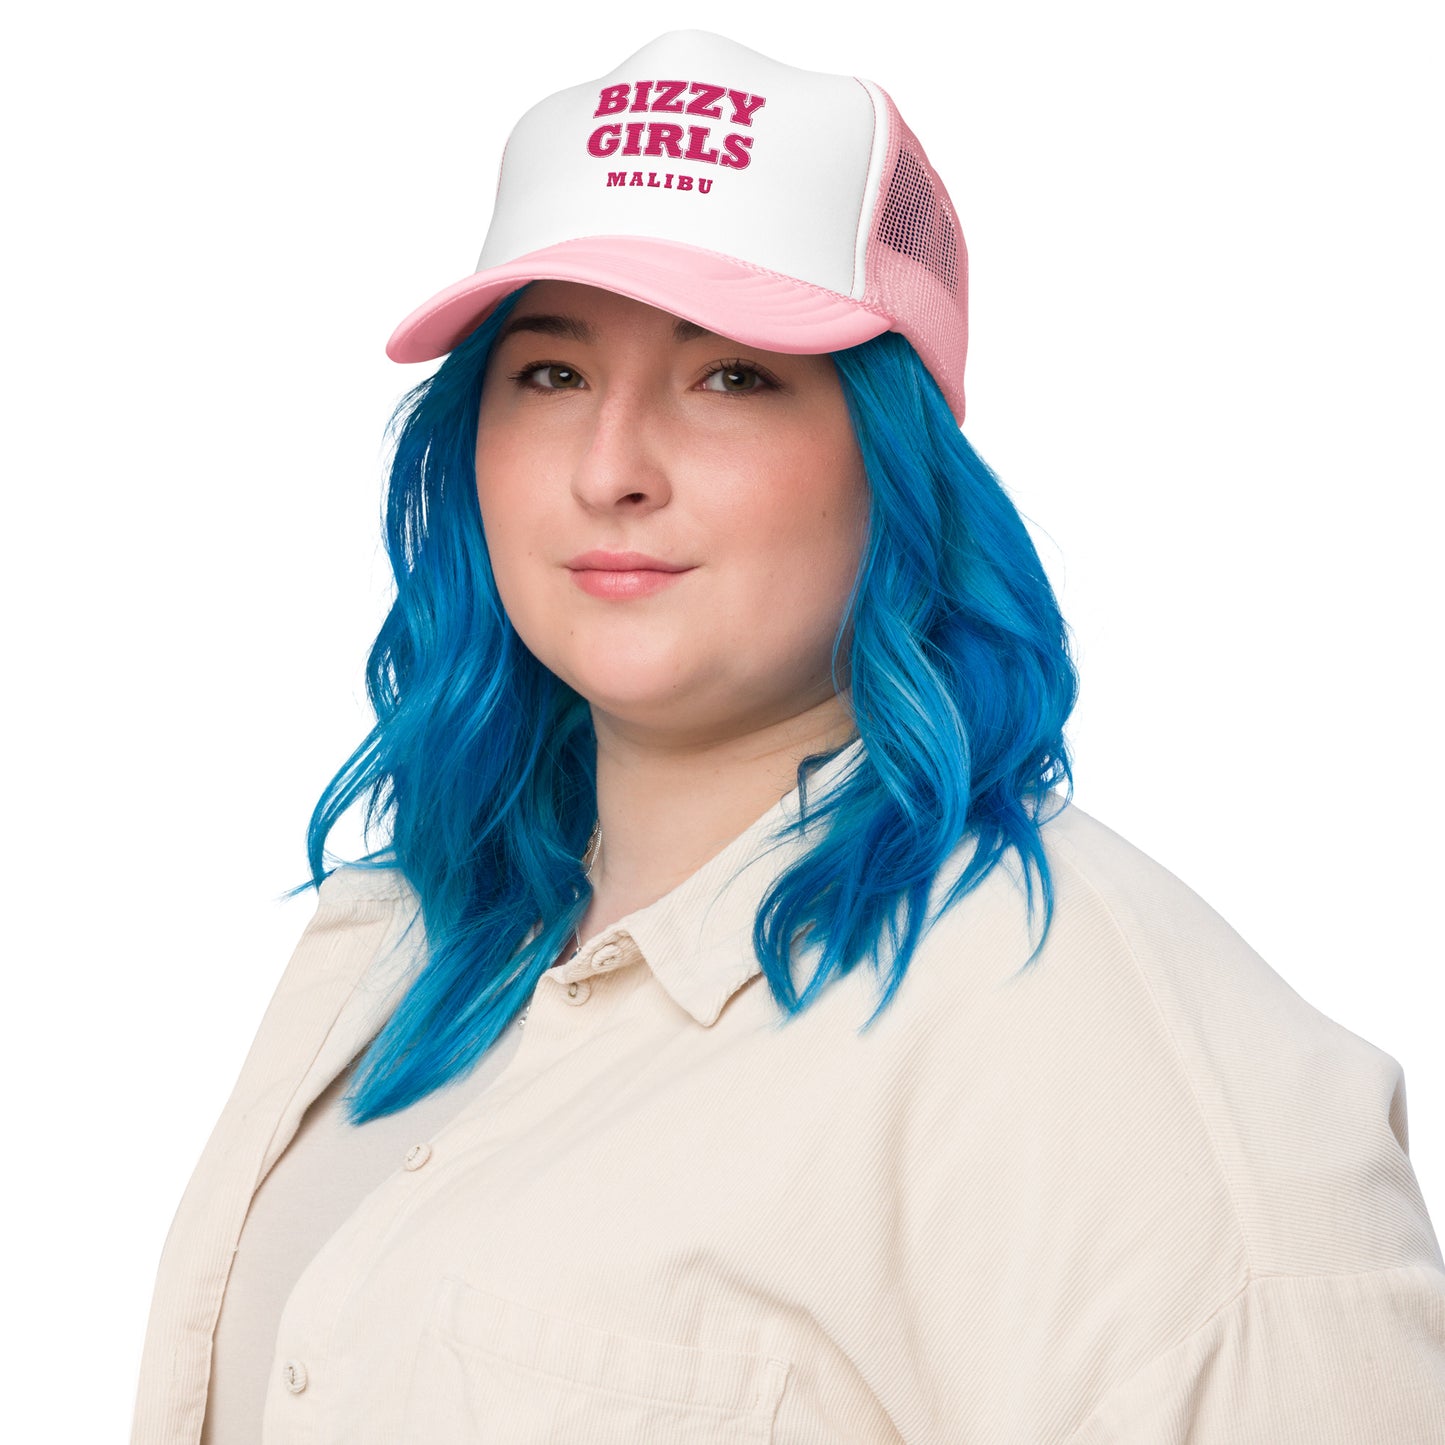 Bizzy Girls Foam trucker hat - Malibu